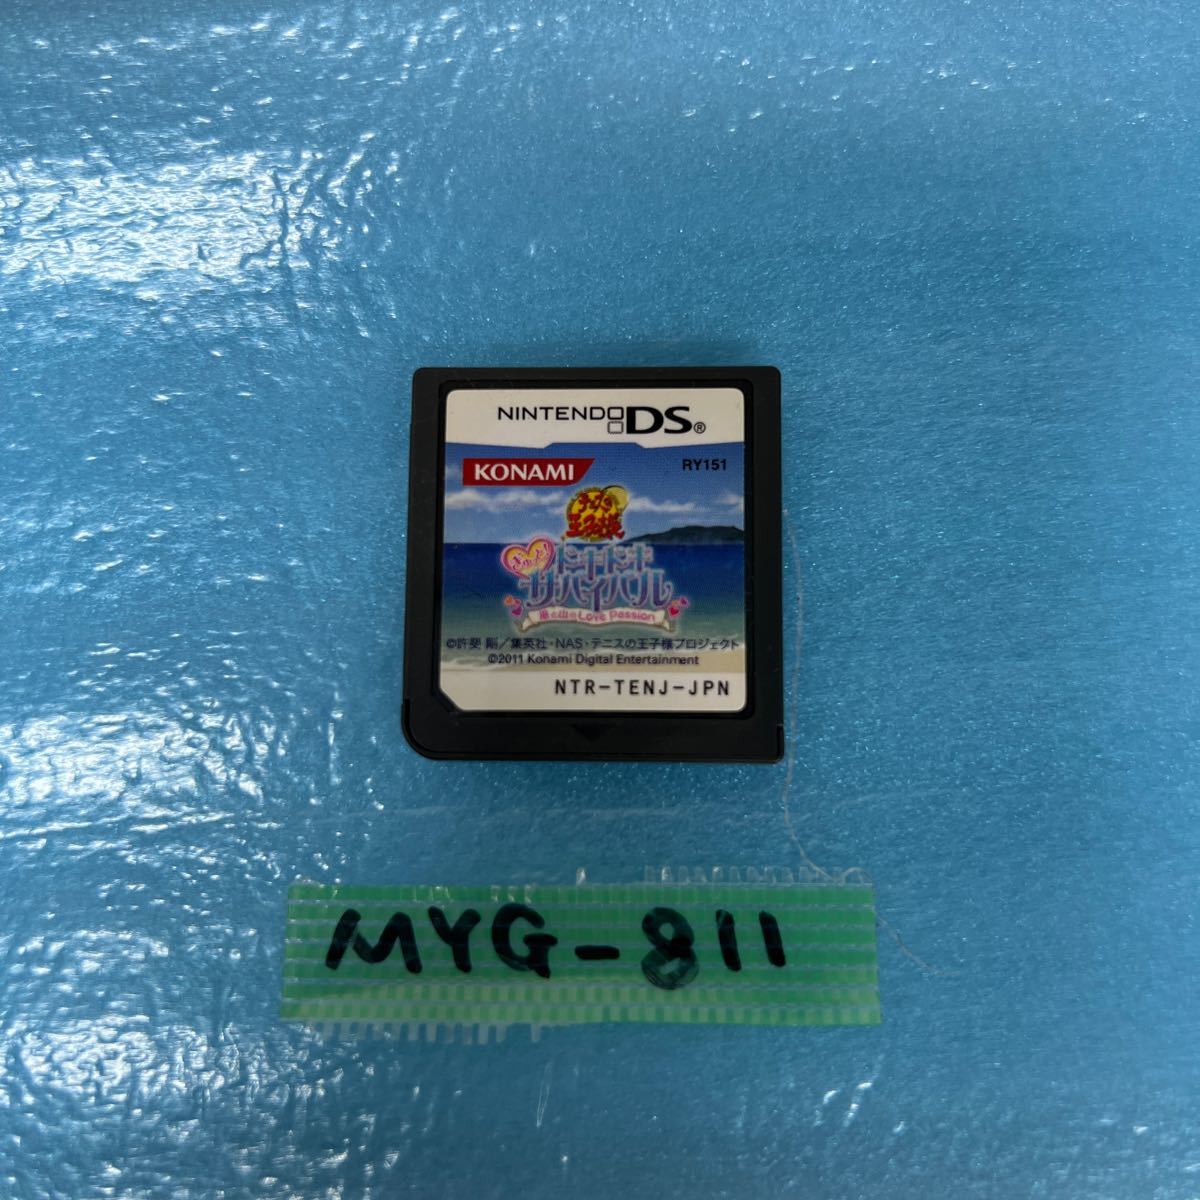 MYG-811 激安 ゲー厶 ソフト Nintendo DS ソフト テニスの王子様 ぎゅっと ドキドキサバイバル 動作確認済み 中古 同梱不可